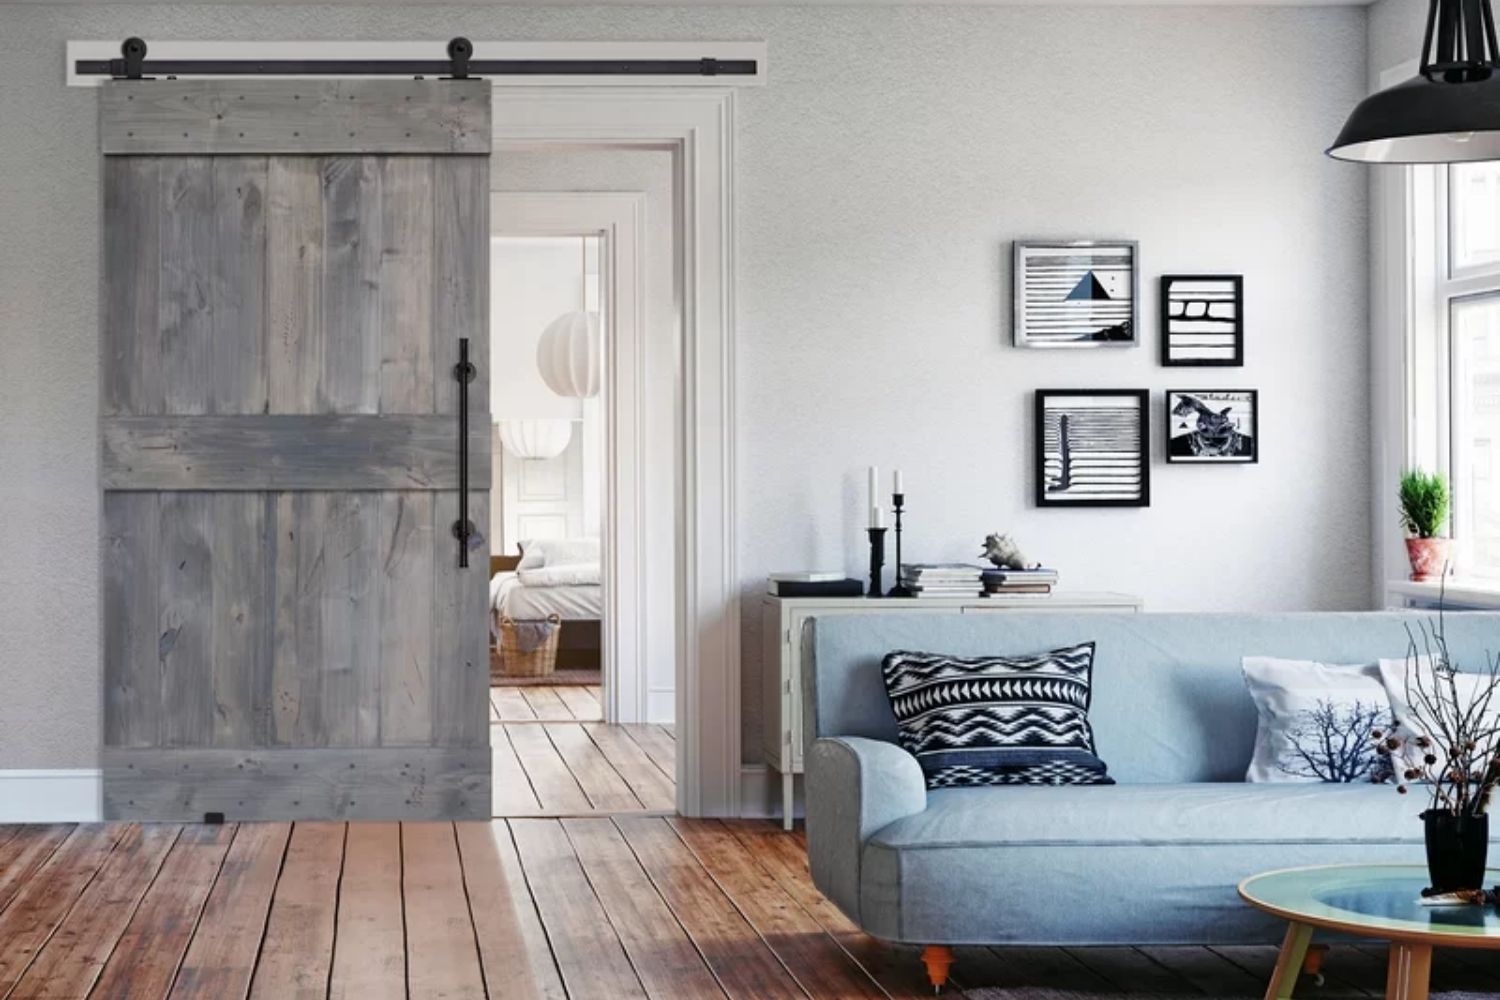 The best barn door option open partway to reveal a bedroom just off a living room